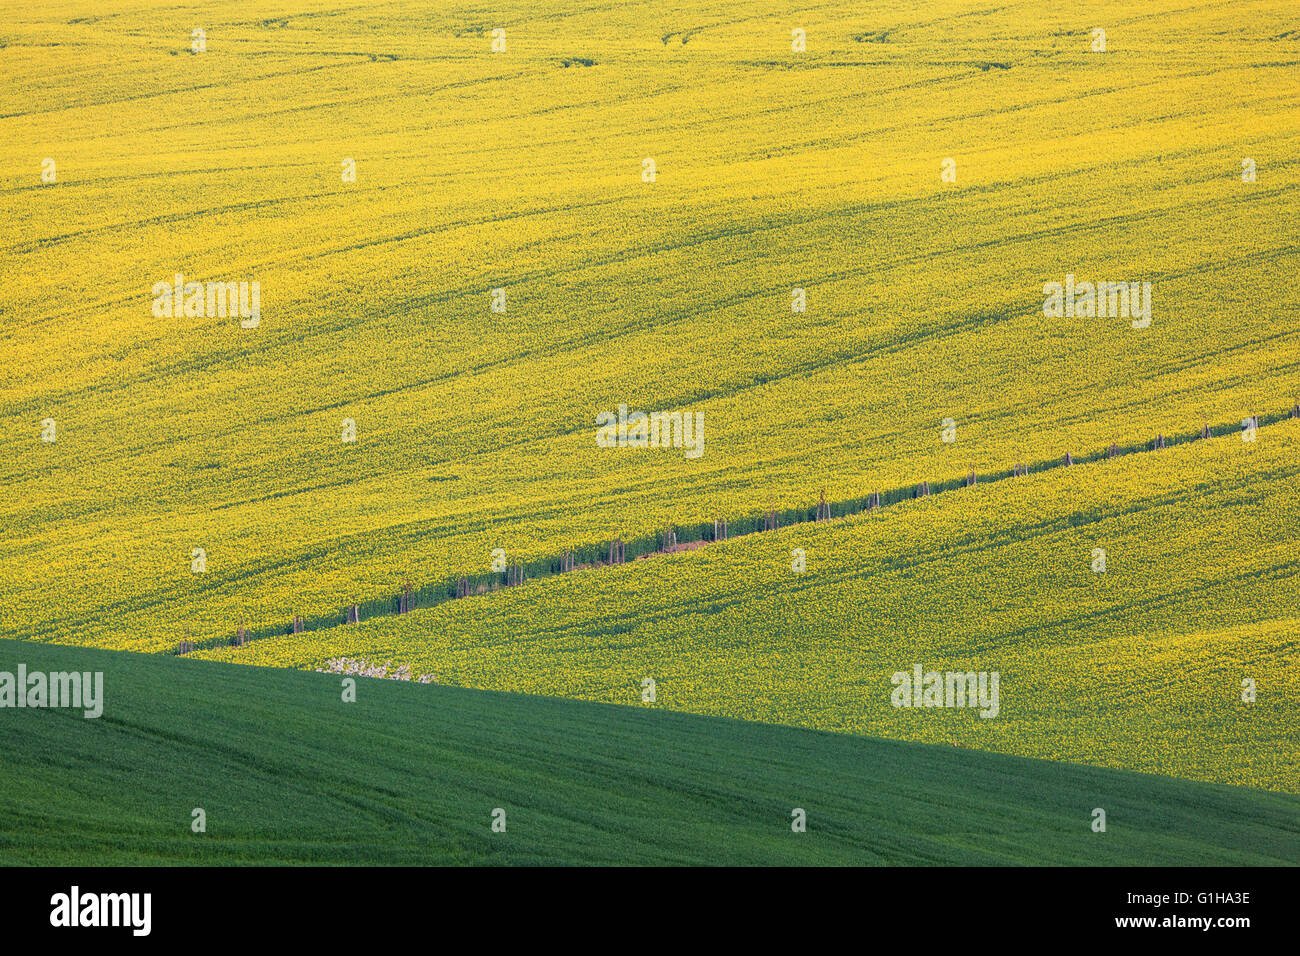 Schöne gelbe Rapsfelder in Südmähren, Tschechien. Blumen, Natur-Hintergrund. Stockfoto